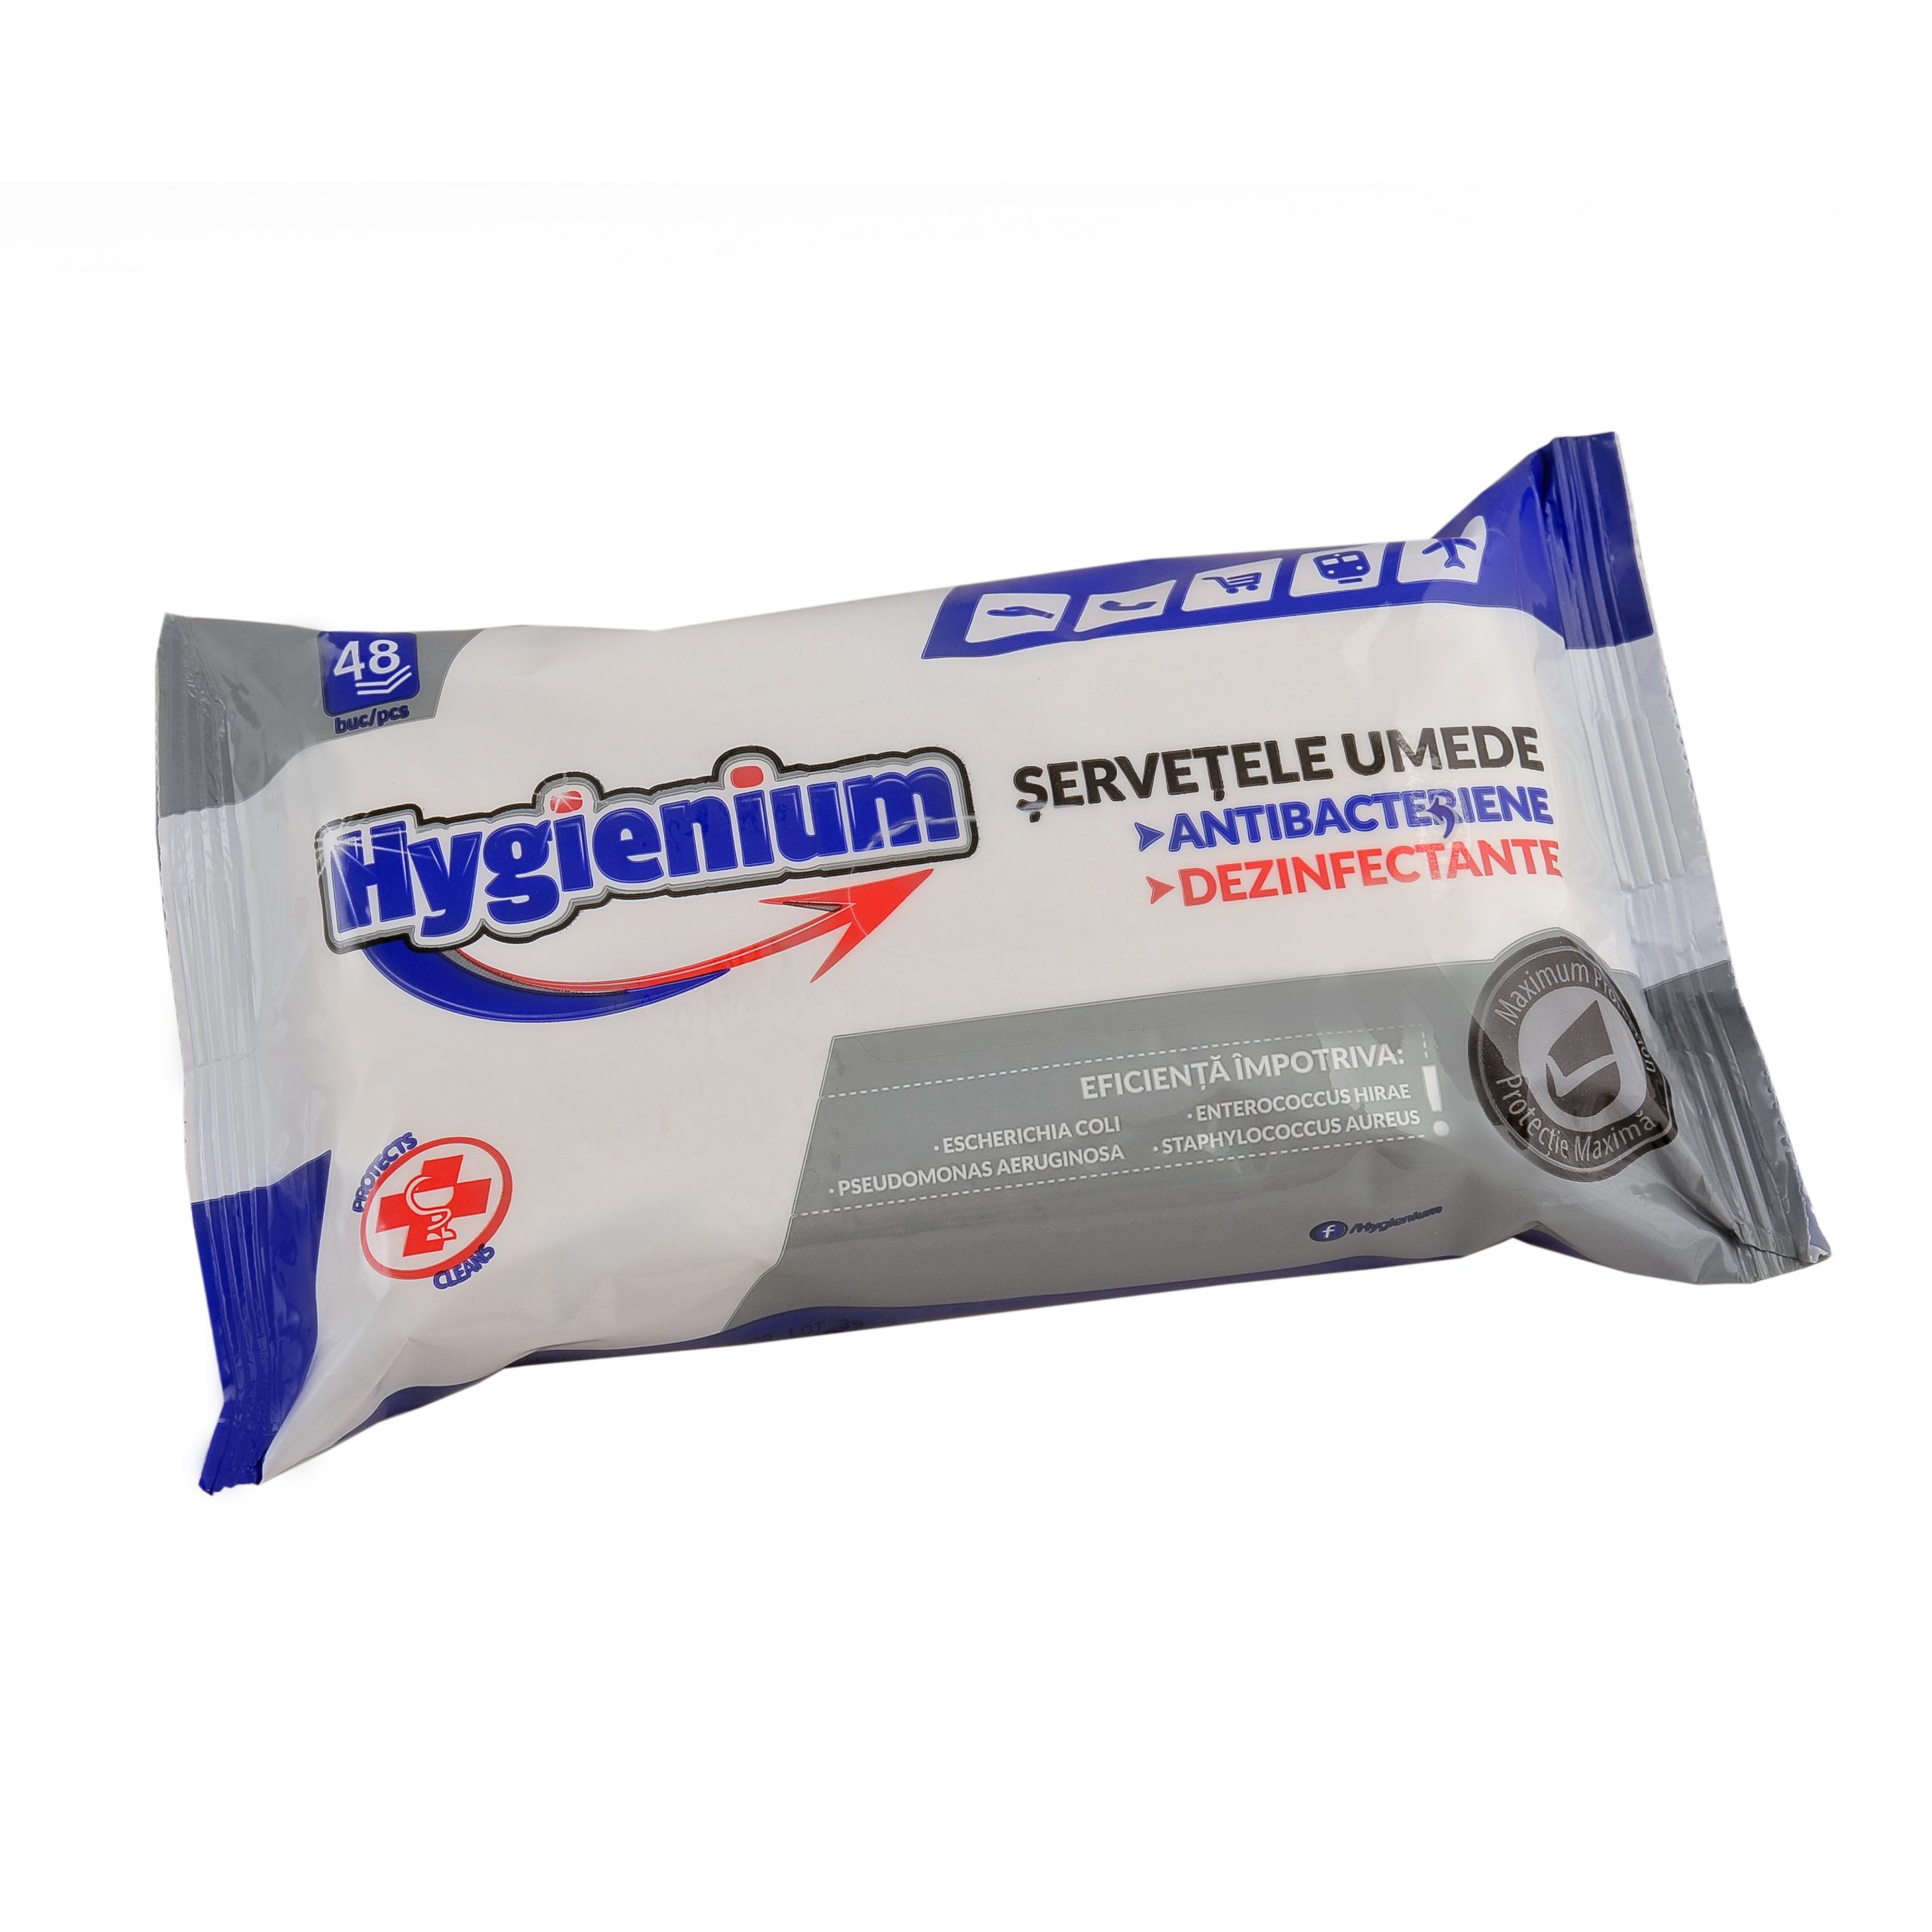 Hygienium servetele umede x 48 buc